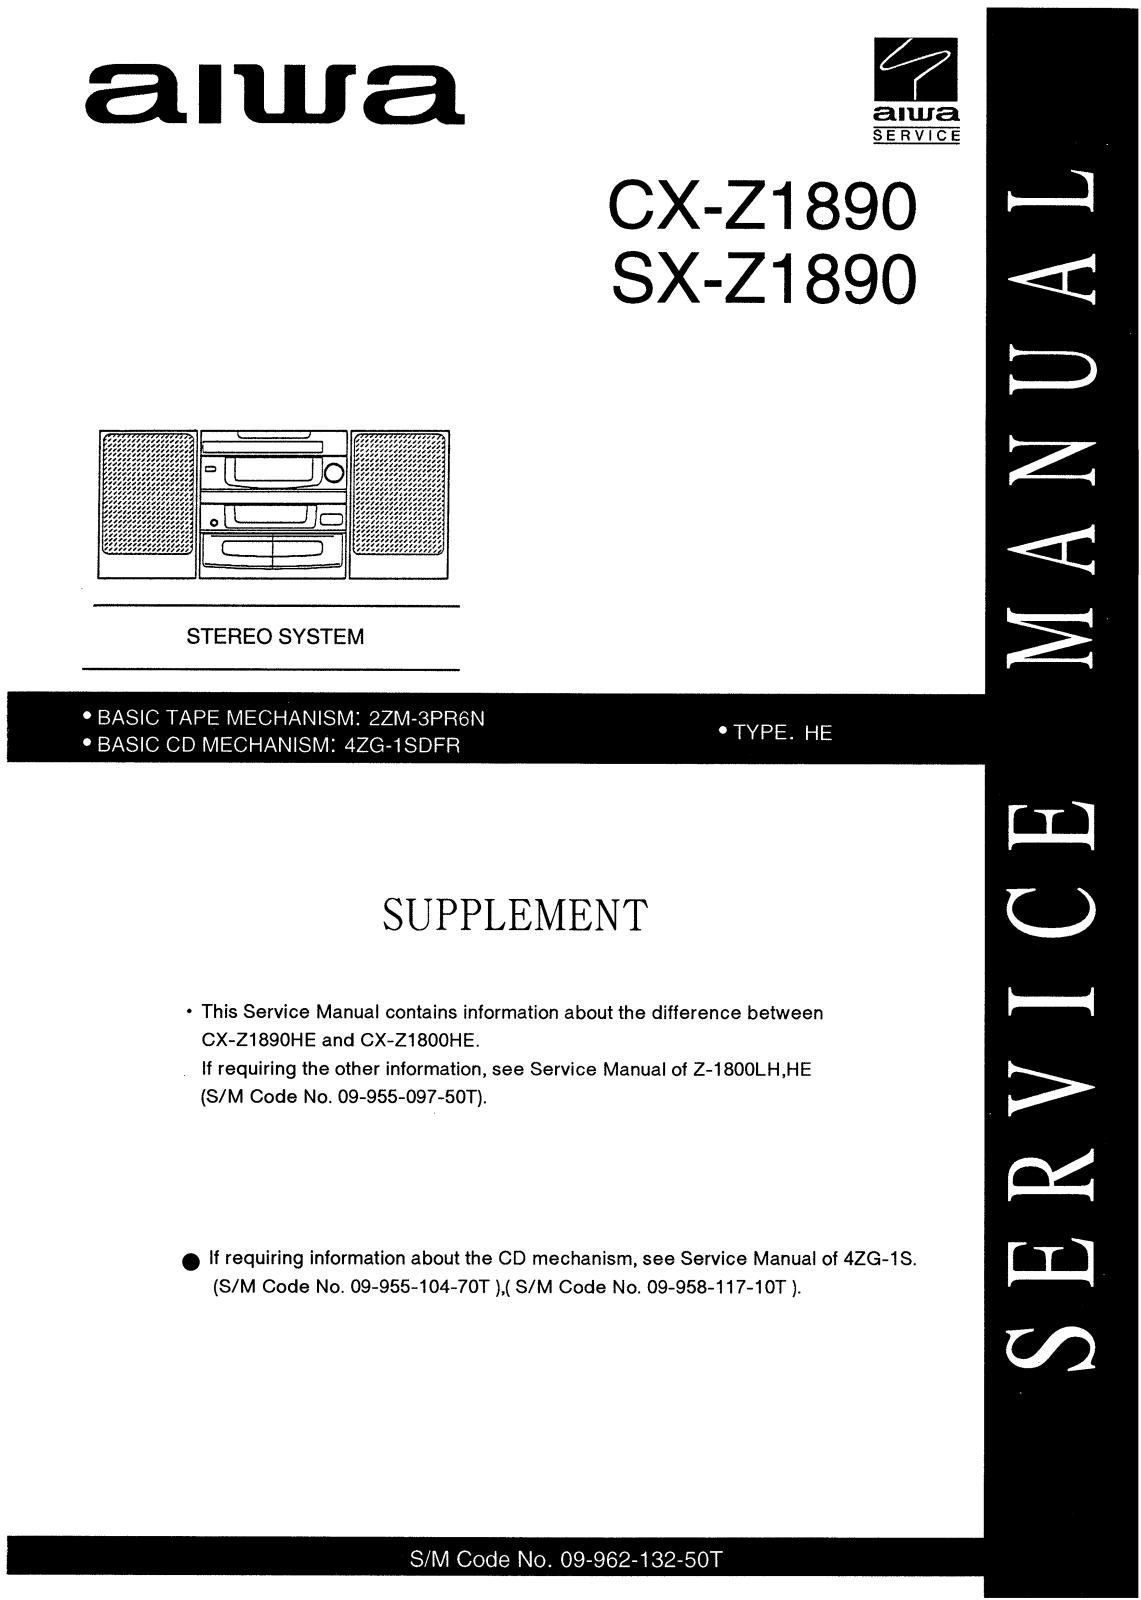 Aiwa CX Z1890 Service Manual